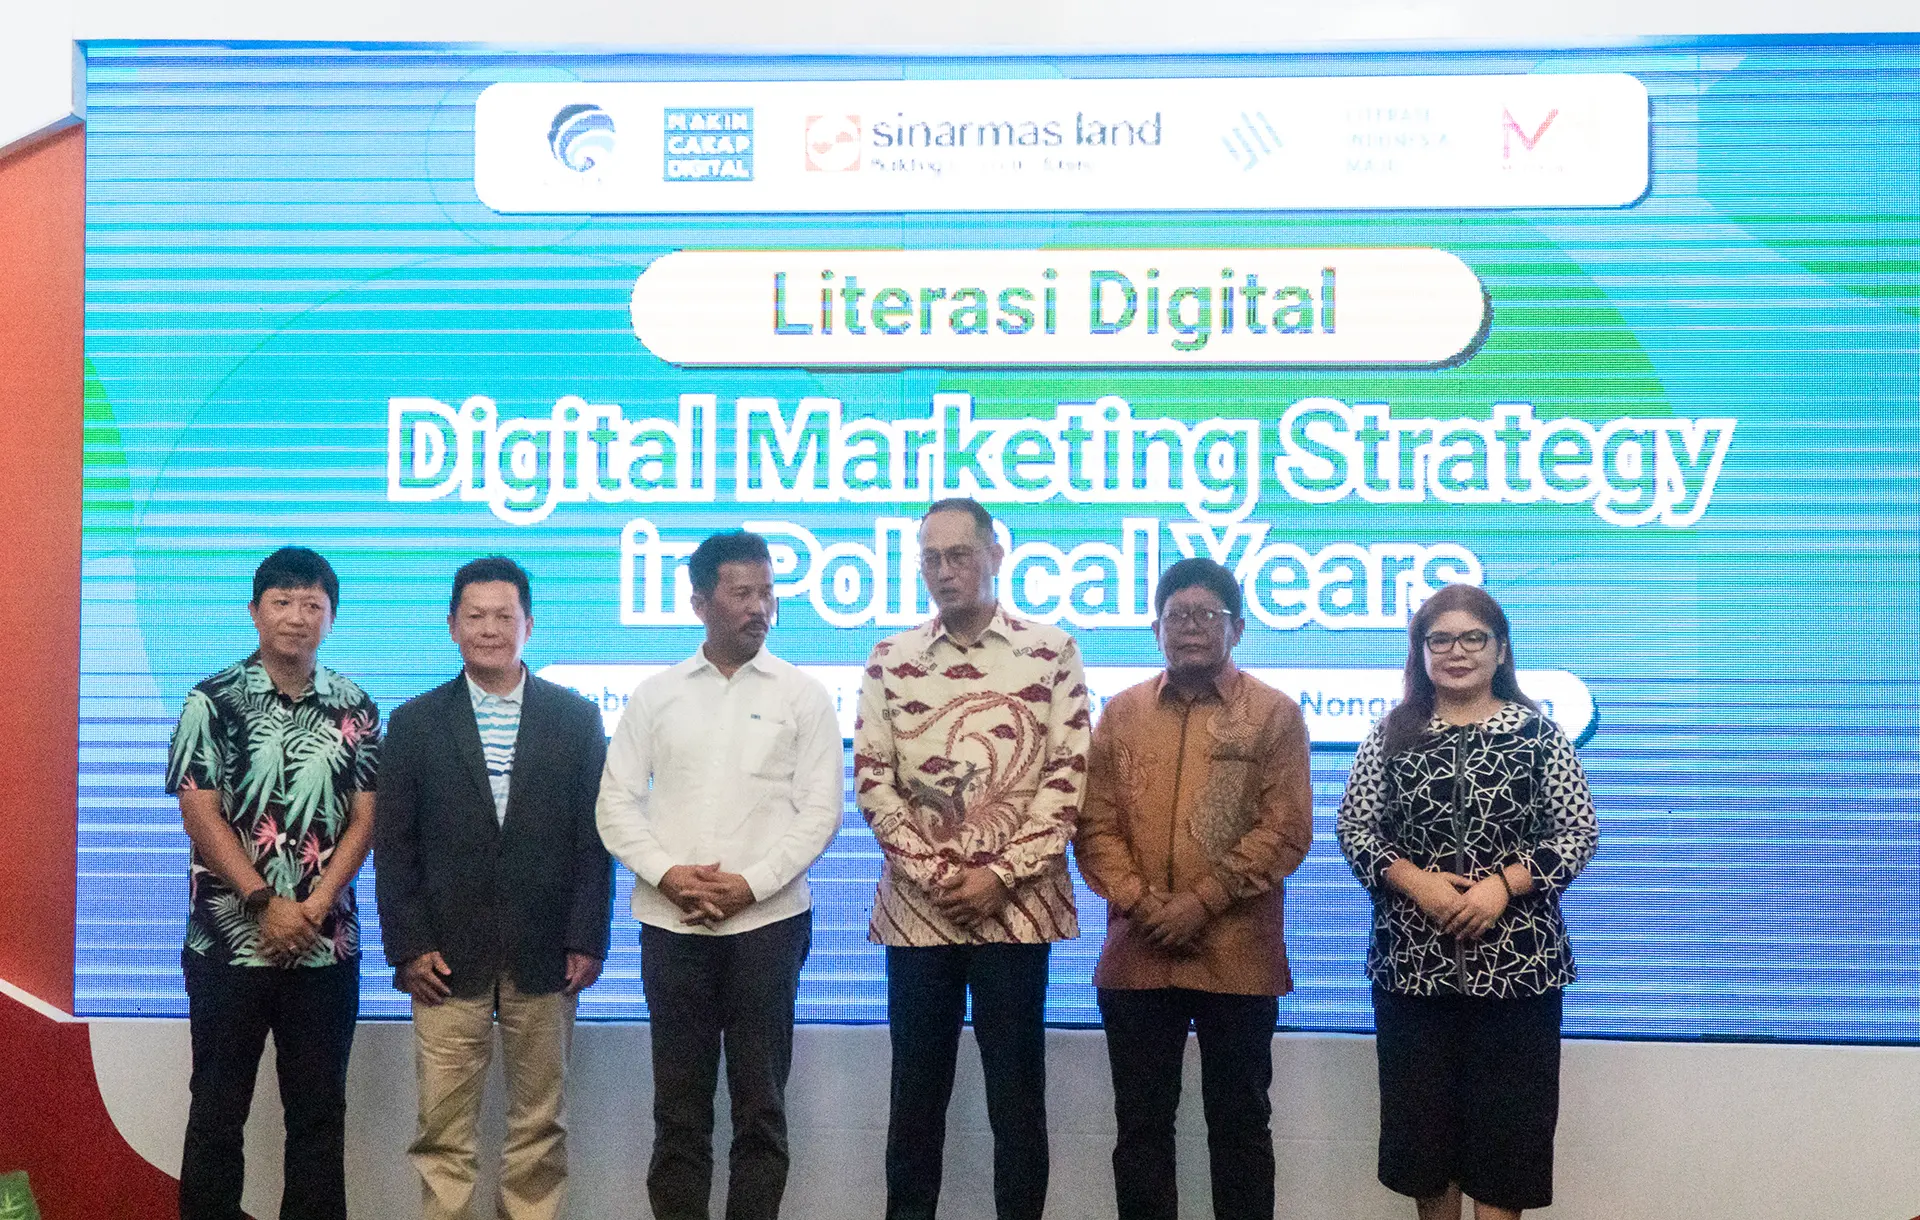 Digital Marketing Strategy in Political Year